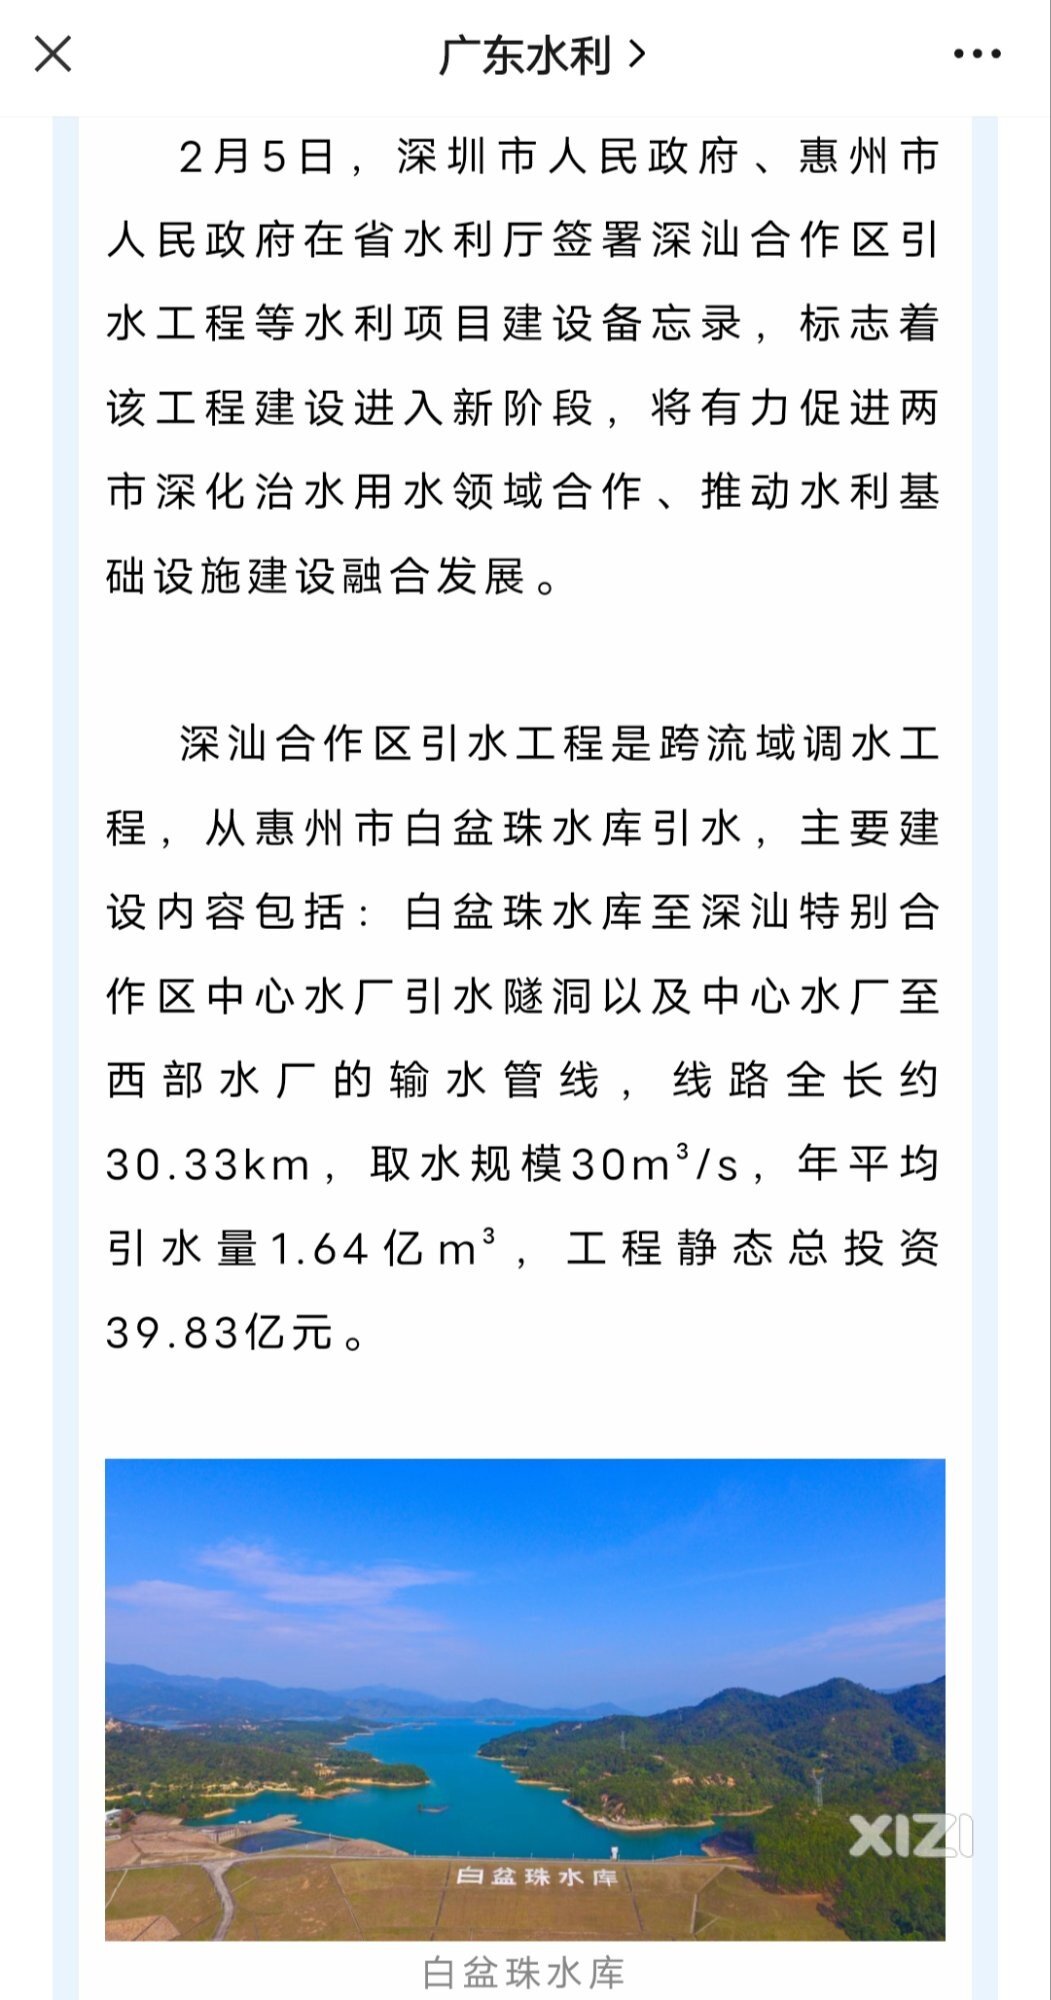 深汕、汕尾在深圳大哥的带动下发展都很快。对水资源。还要向惠州白盆